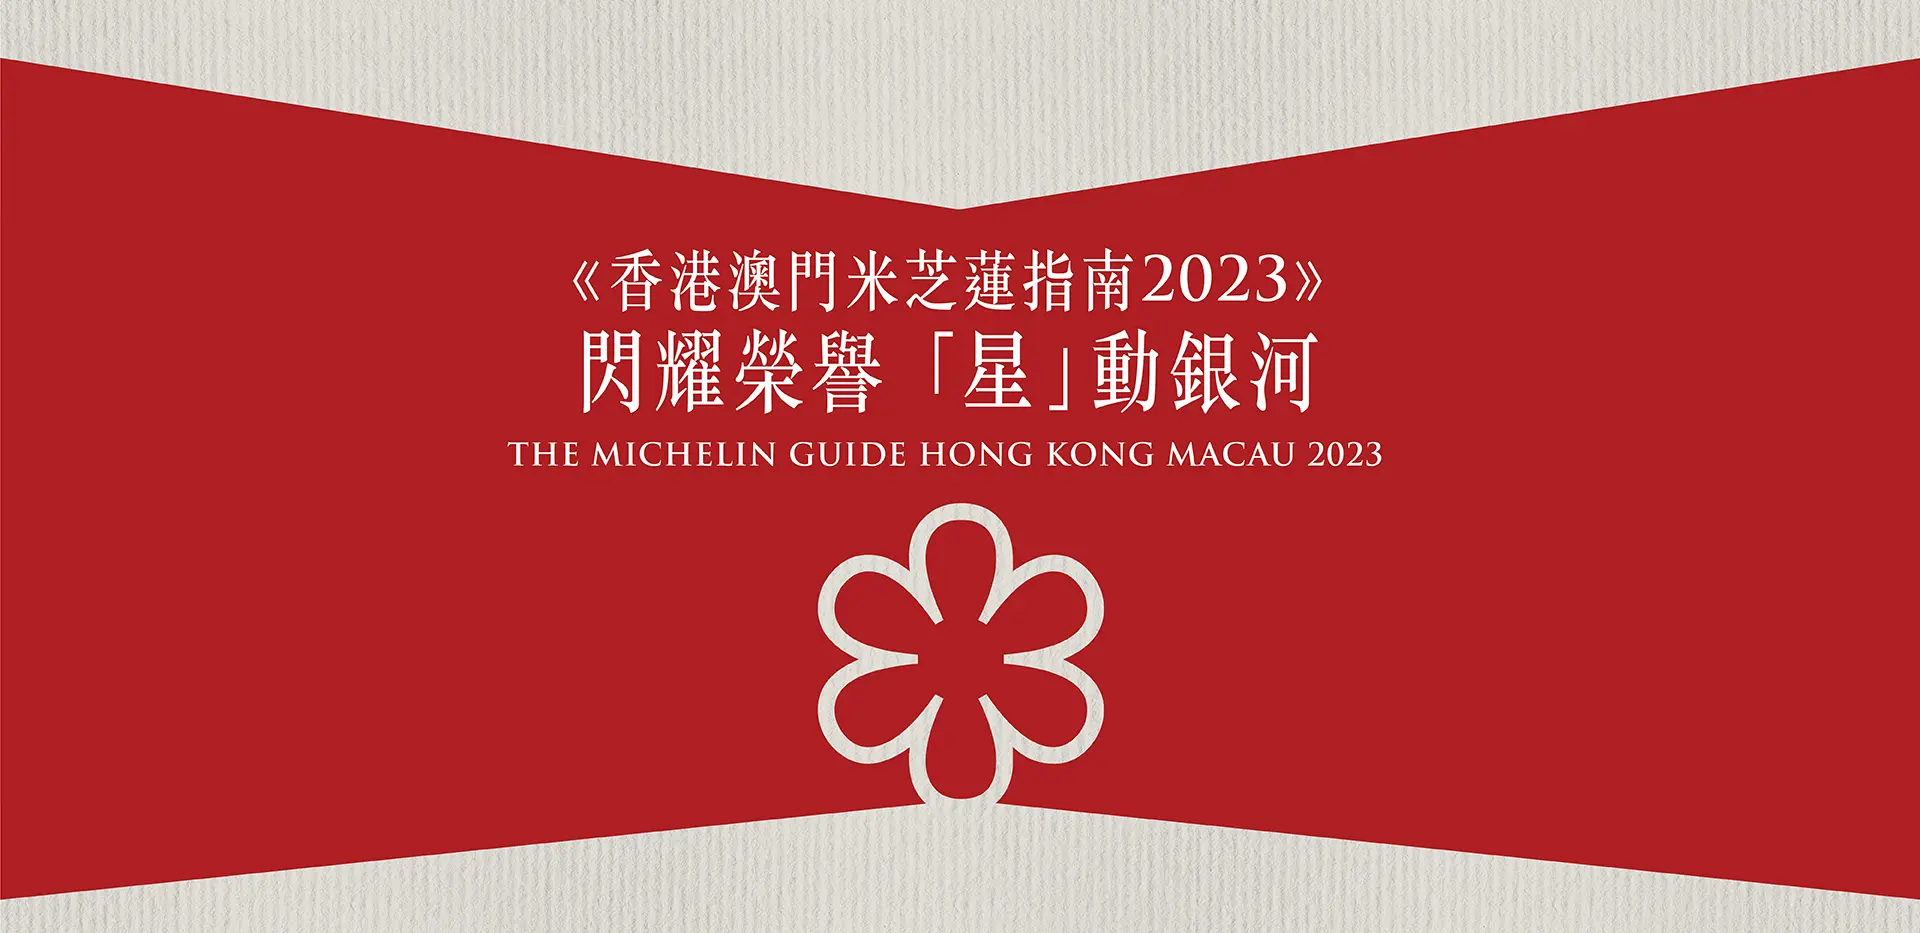 Michelin Award 2023 Galaxy Macau